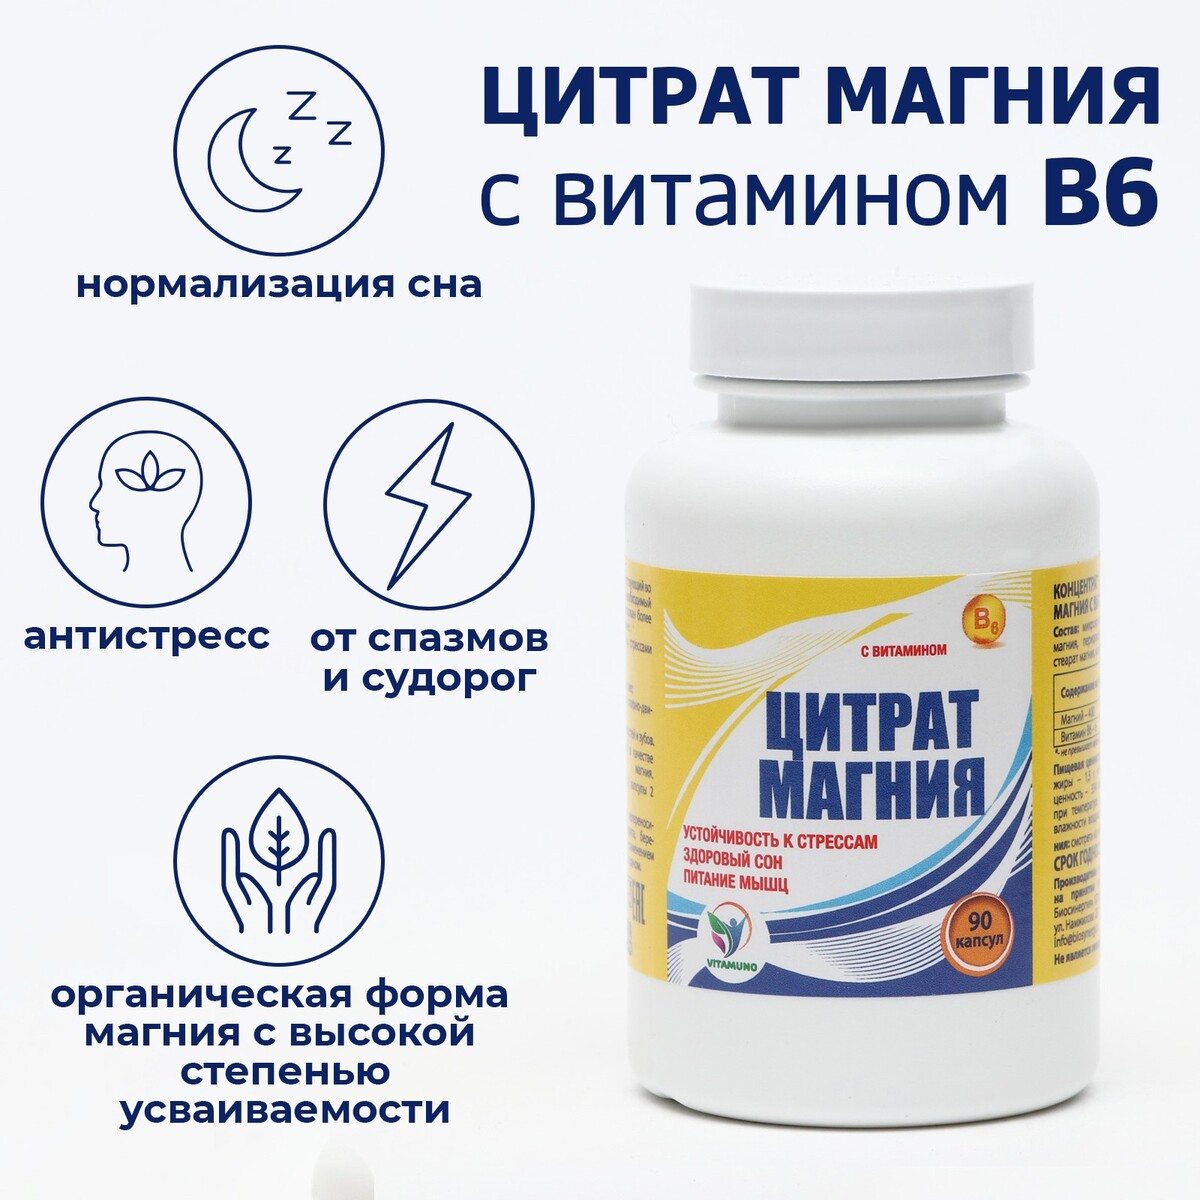 Цитрат магния с витамином в6 vitamuno, для борьбы со стрессом и усталостью, 90 капсул Vitamuno 08129577 - фото 1